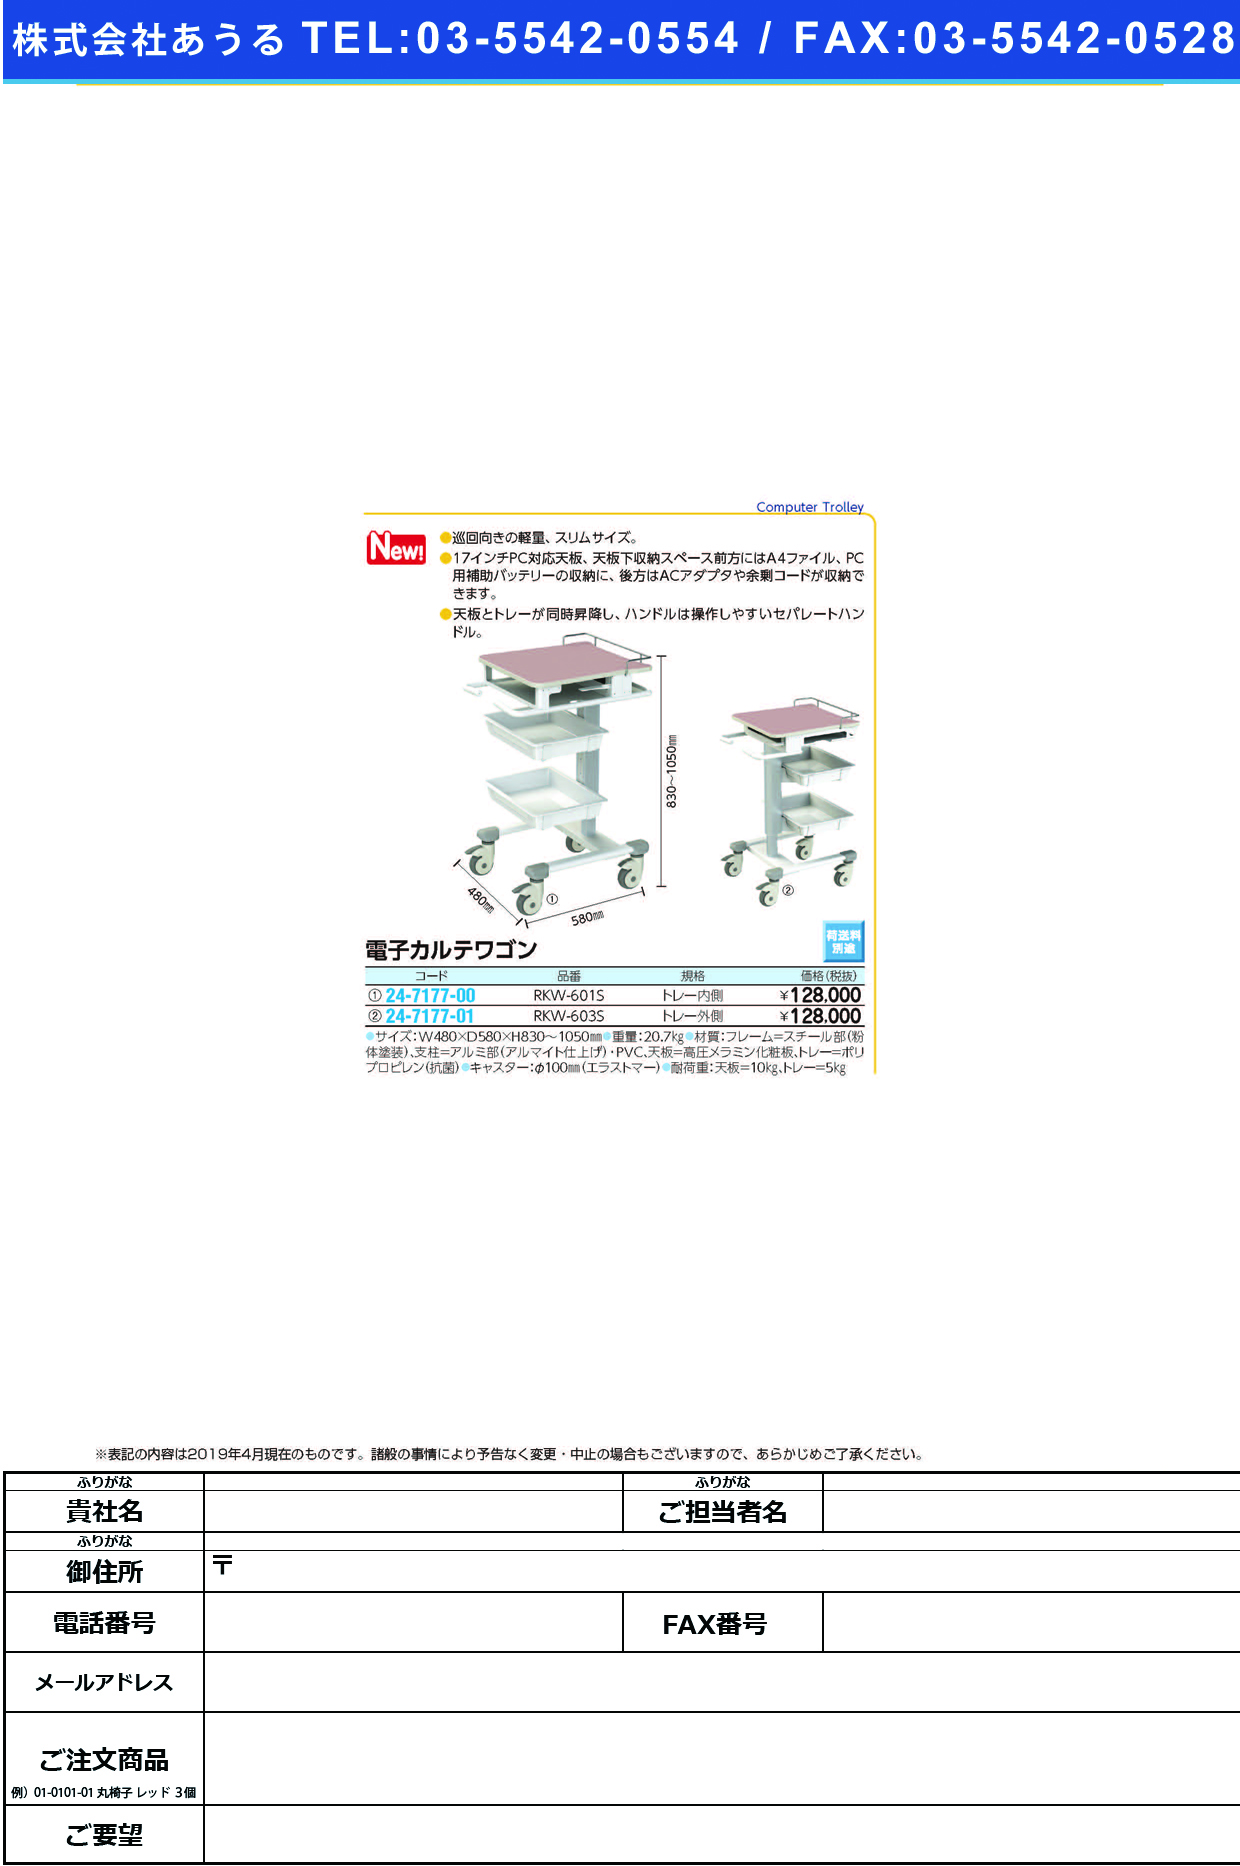 (24-7177-00)電子カルテワゴンRKW-601S ﾃﾞﾝｼｶﾙﾃﾜｺﾞﾝ(ナカバヤシ)【1台単位】【2019年カタログ商品】